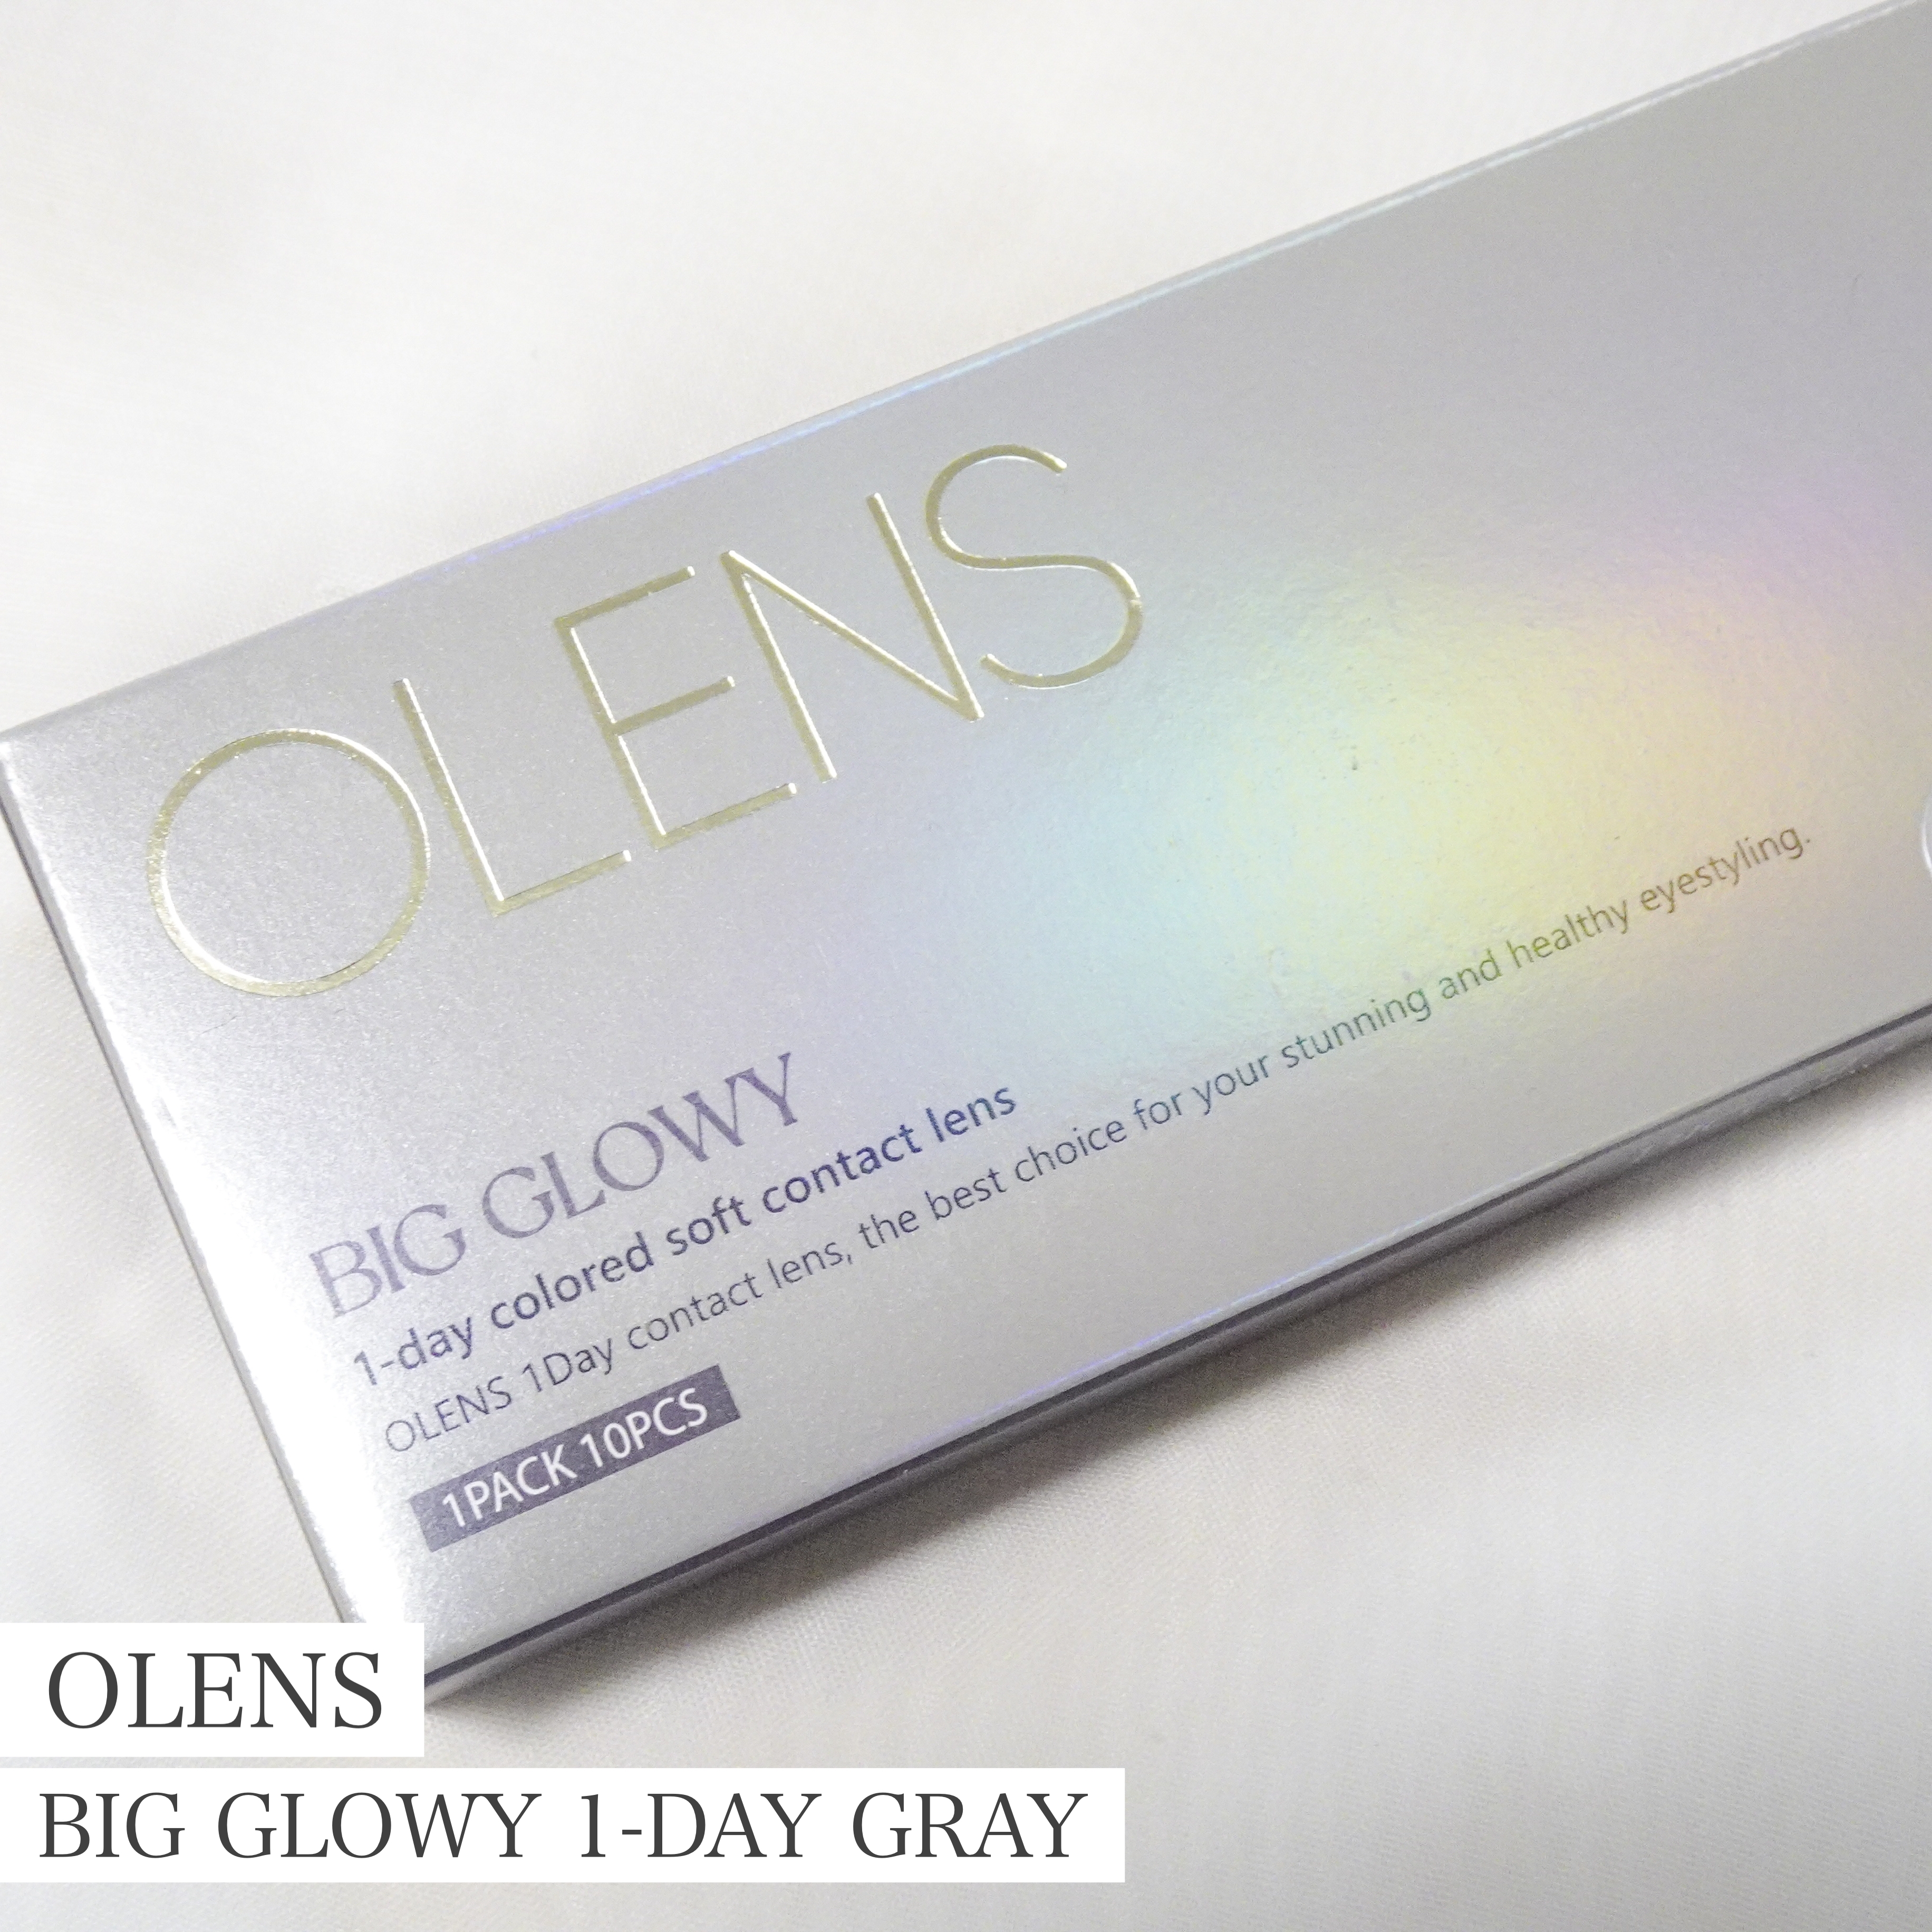 OLENBig Glowy 1-day Grayを使ったaquaさんのクチコミ画像1